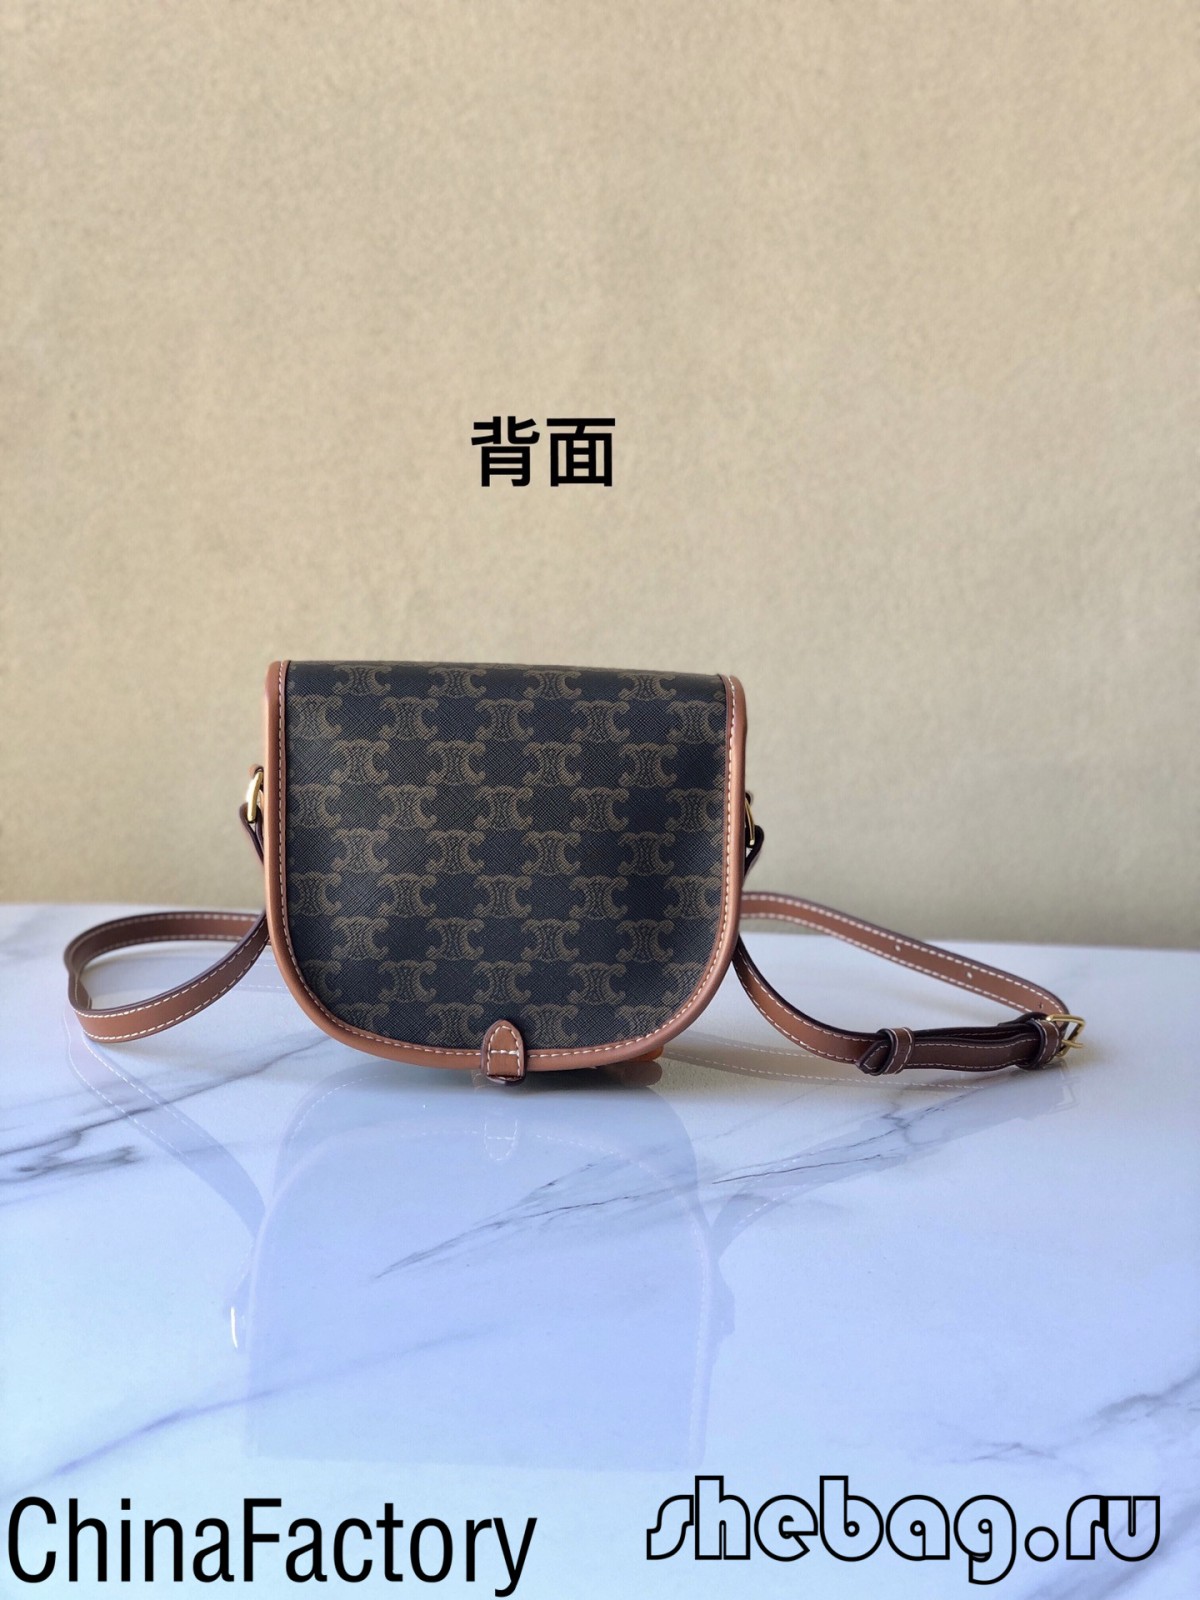 ຜູ້ຂາຍຖົງສາຍແອວທີ່ດີທີ່ສຸດຂອງ replica ໃນປະເທດຈີນ: Celine Folco (ປັບປຸງໃນປີ 2022) - ຮ້ານອອນໄລນ໌ຖົງ Louis Vuitton ປອມທີ່ມີຄຸນນະພາບດີທີ່ສຸດ, Replica designer bag ru